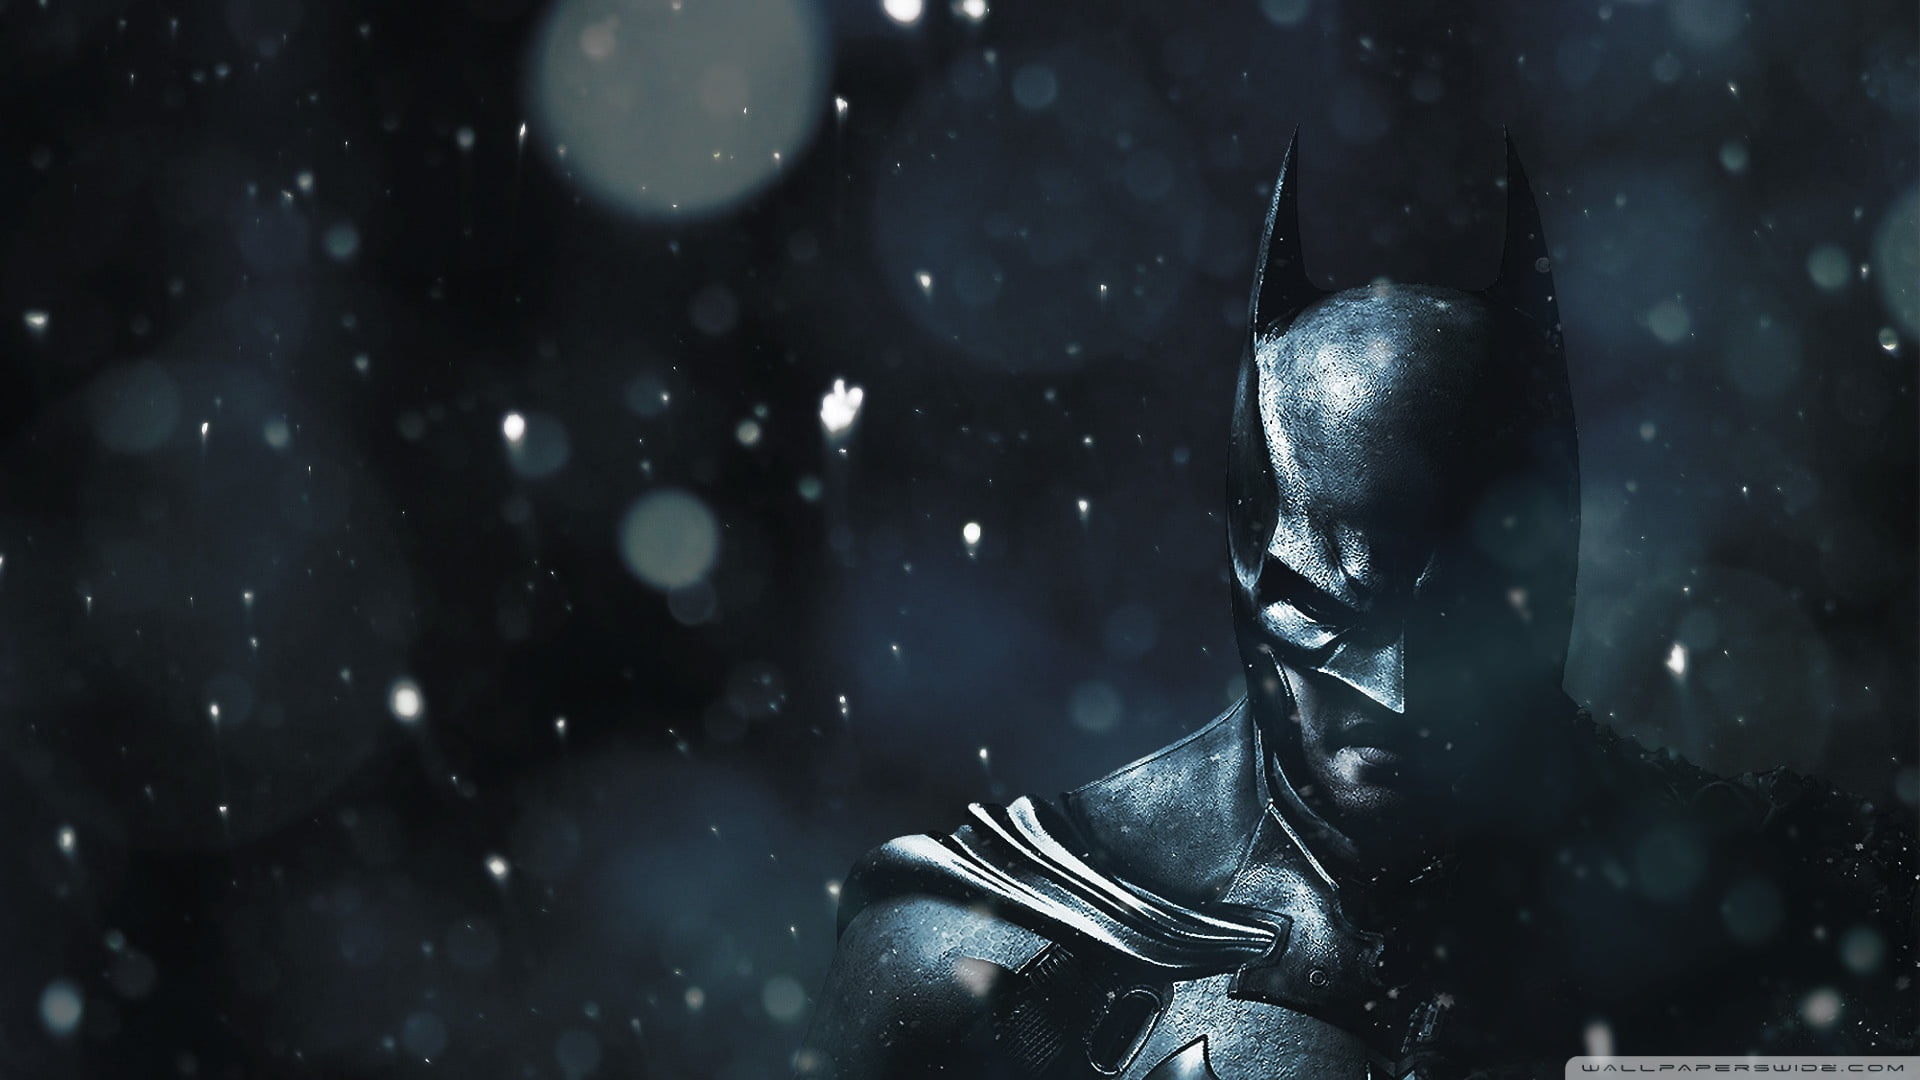 Batman Arkham Knight wallpaper, DC Comics, video games, The Dark Knight